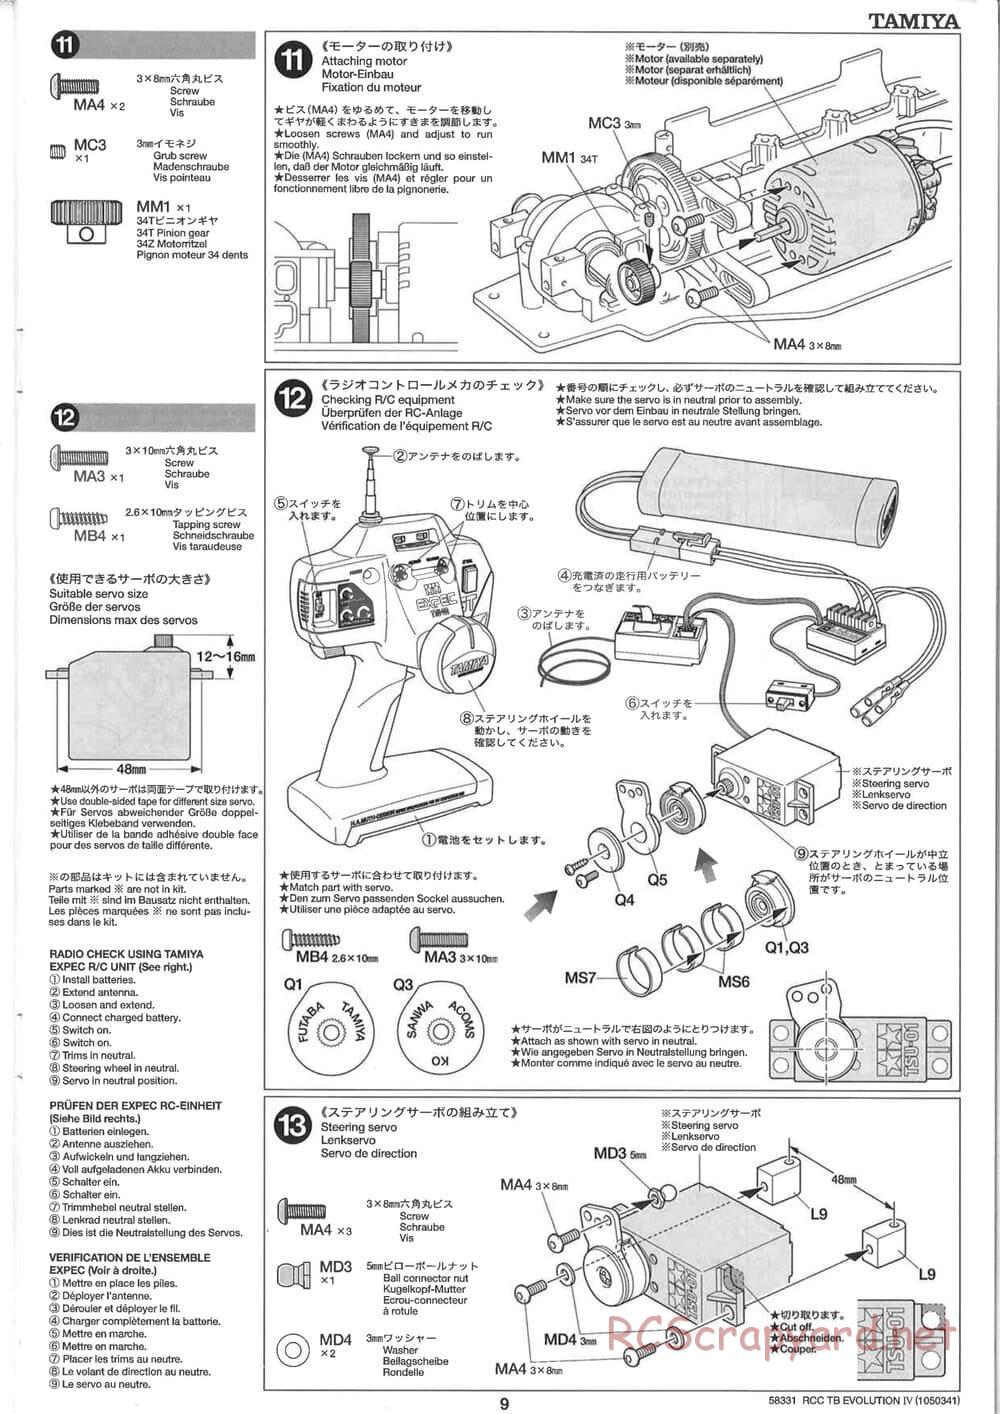 Tamiya - TB Evolution IV Chassis - Manual - Page 9